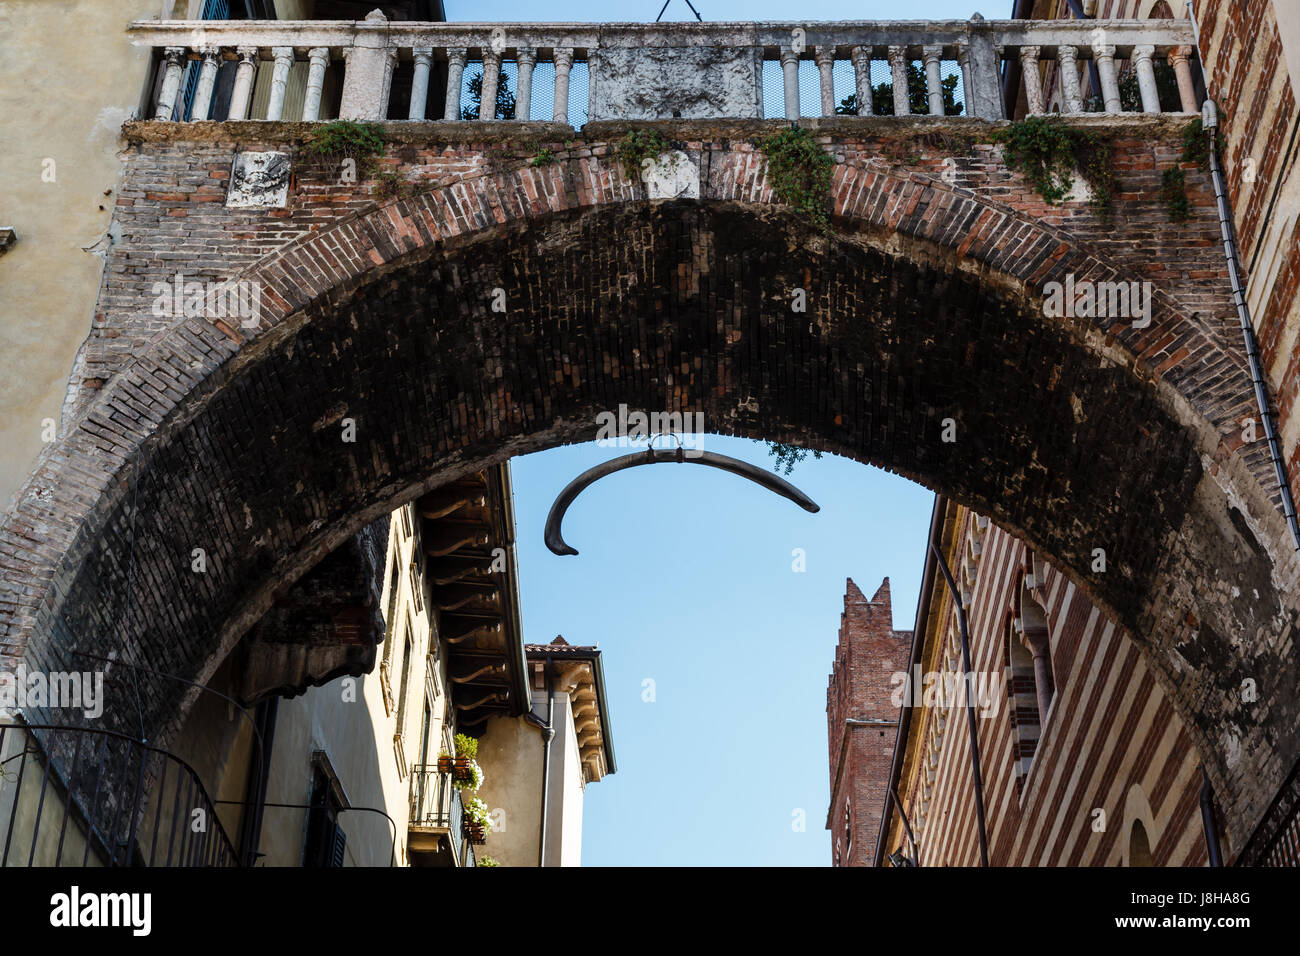 Arco entre Piazza Erbe y Signori en Verona con colgantes de Hueso de Ballena, Veneto, Italia Fotografía stock Alamy